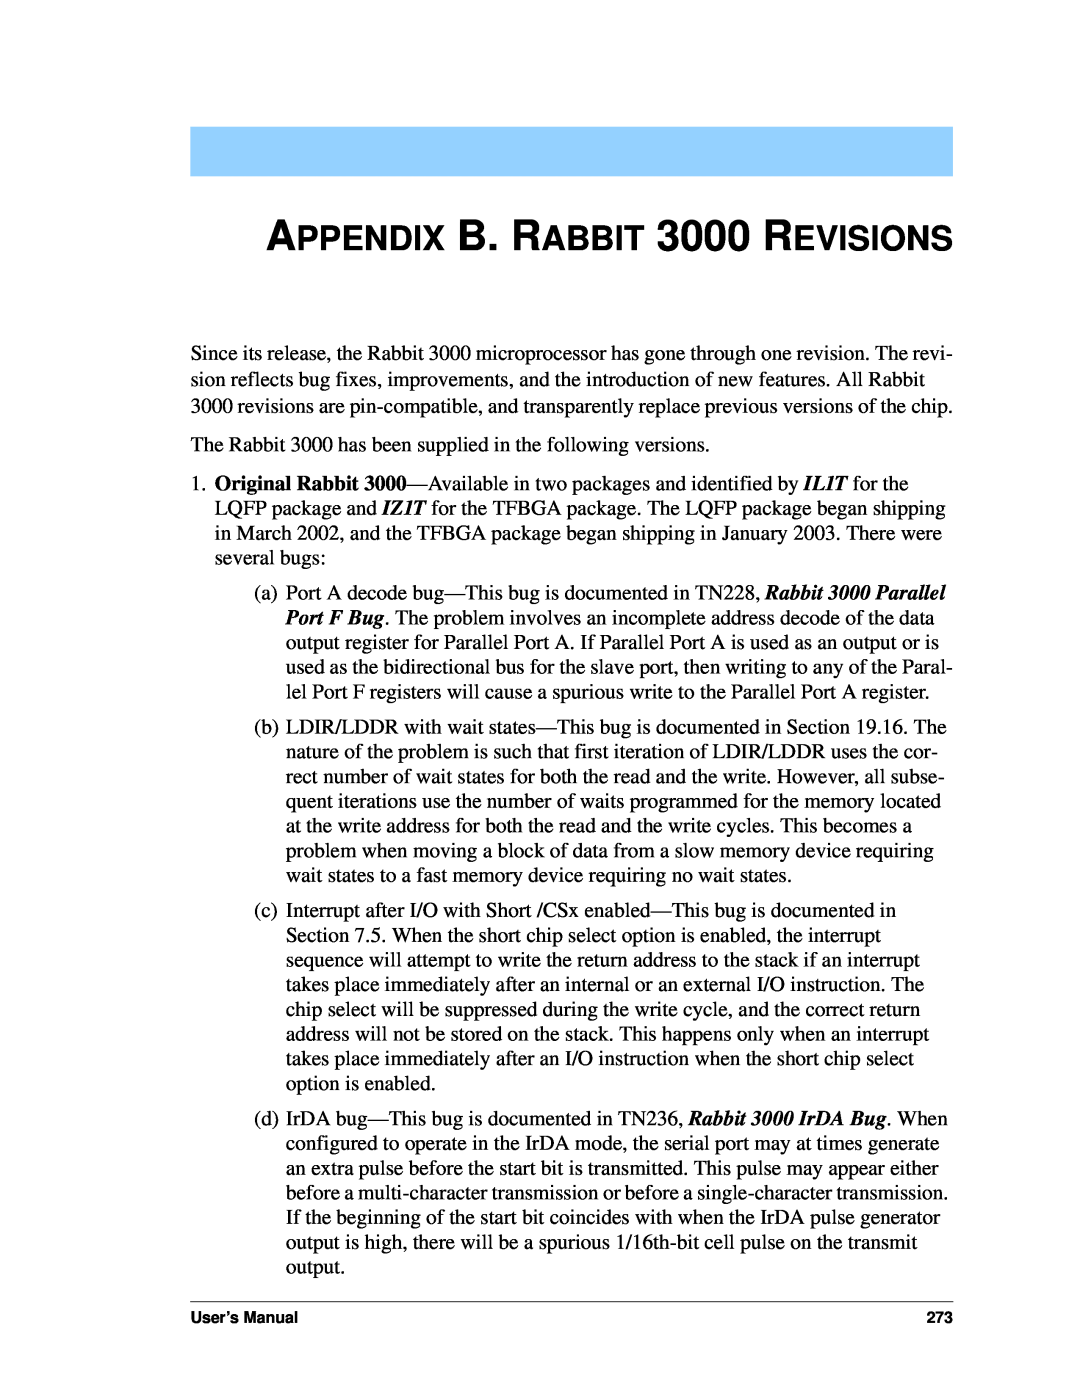 Jameco Electronics 2000 manual APPENDIX B. RABBIT 3000 REVISIONS, User’s Manual 